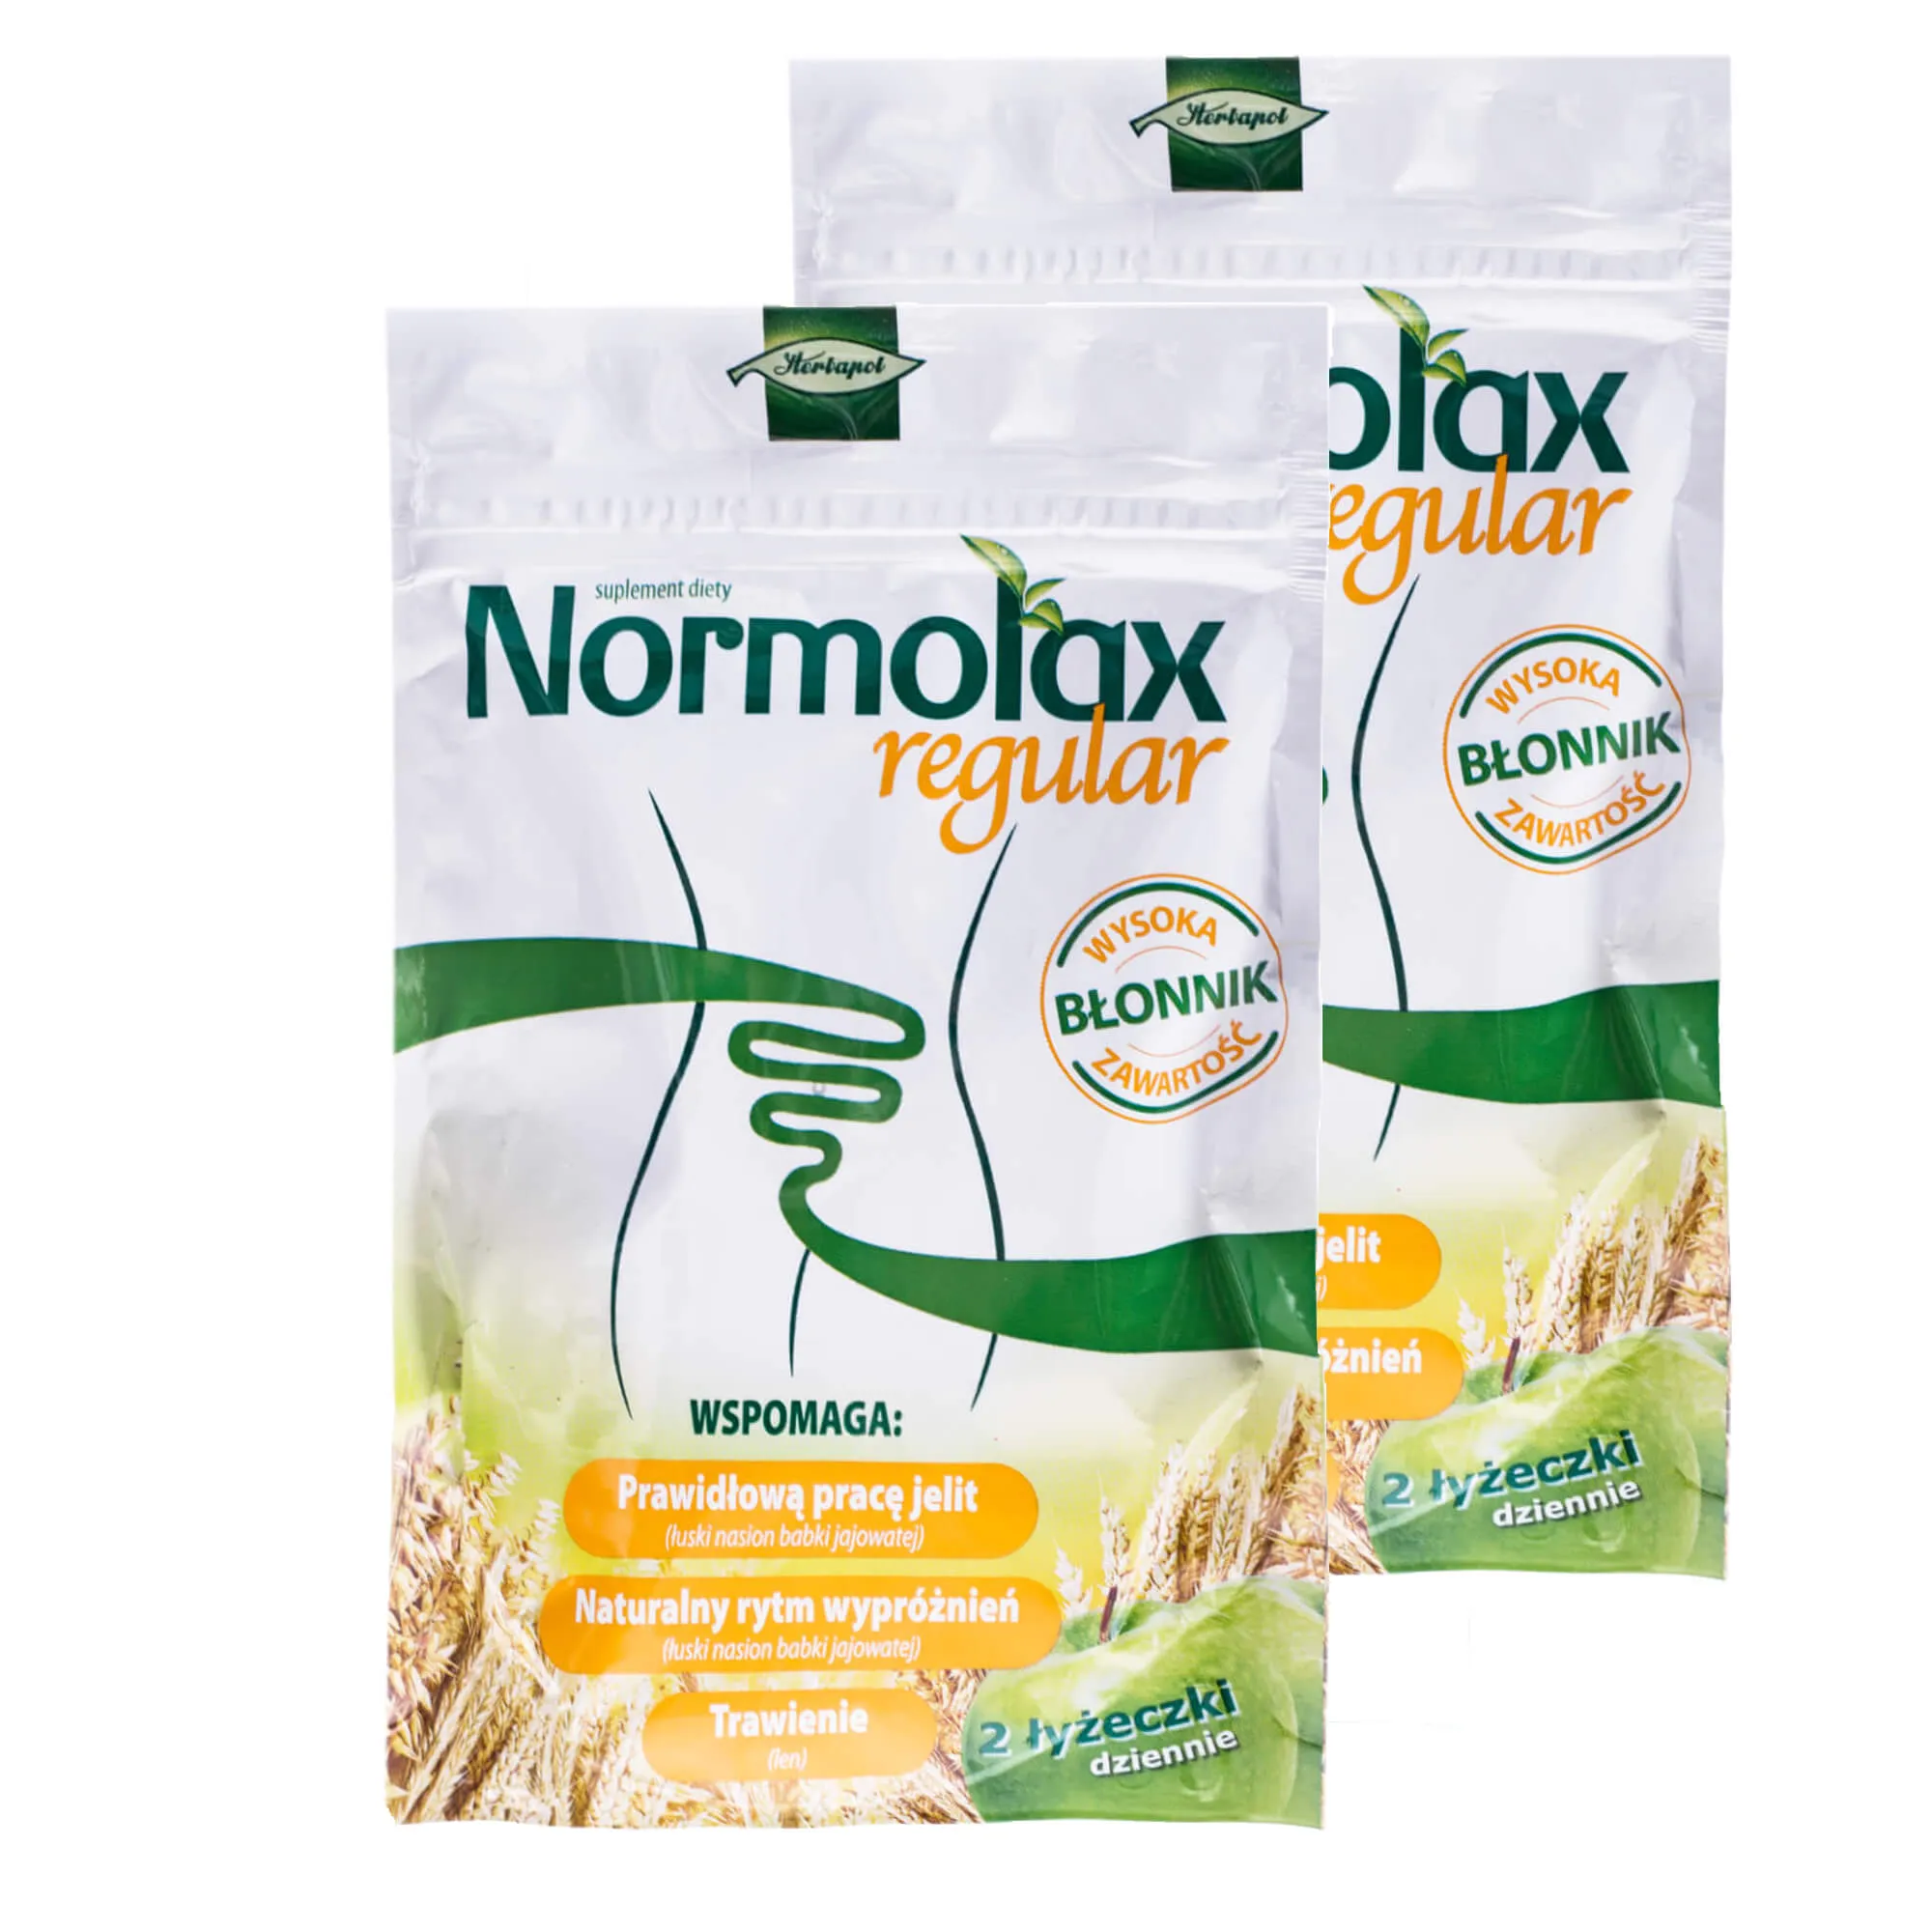 Normolax Regular, suplement diety, 100 g + 100 g gratis 